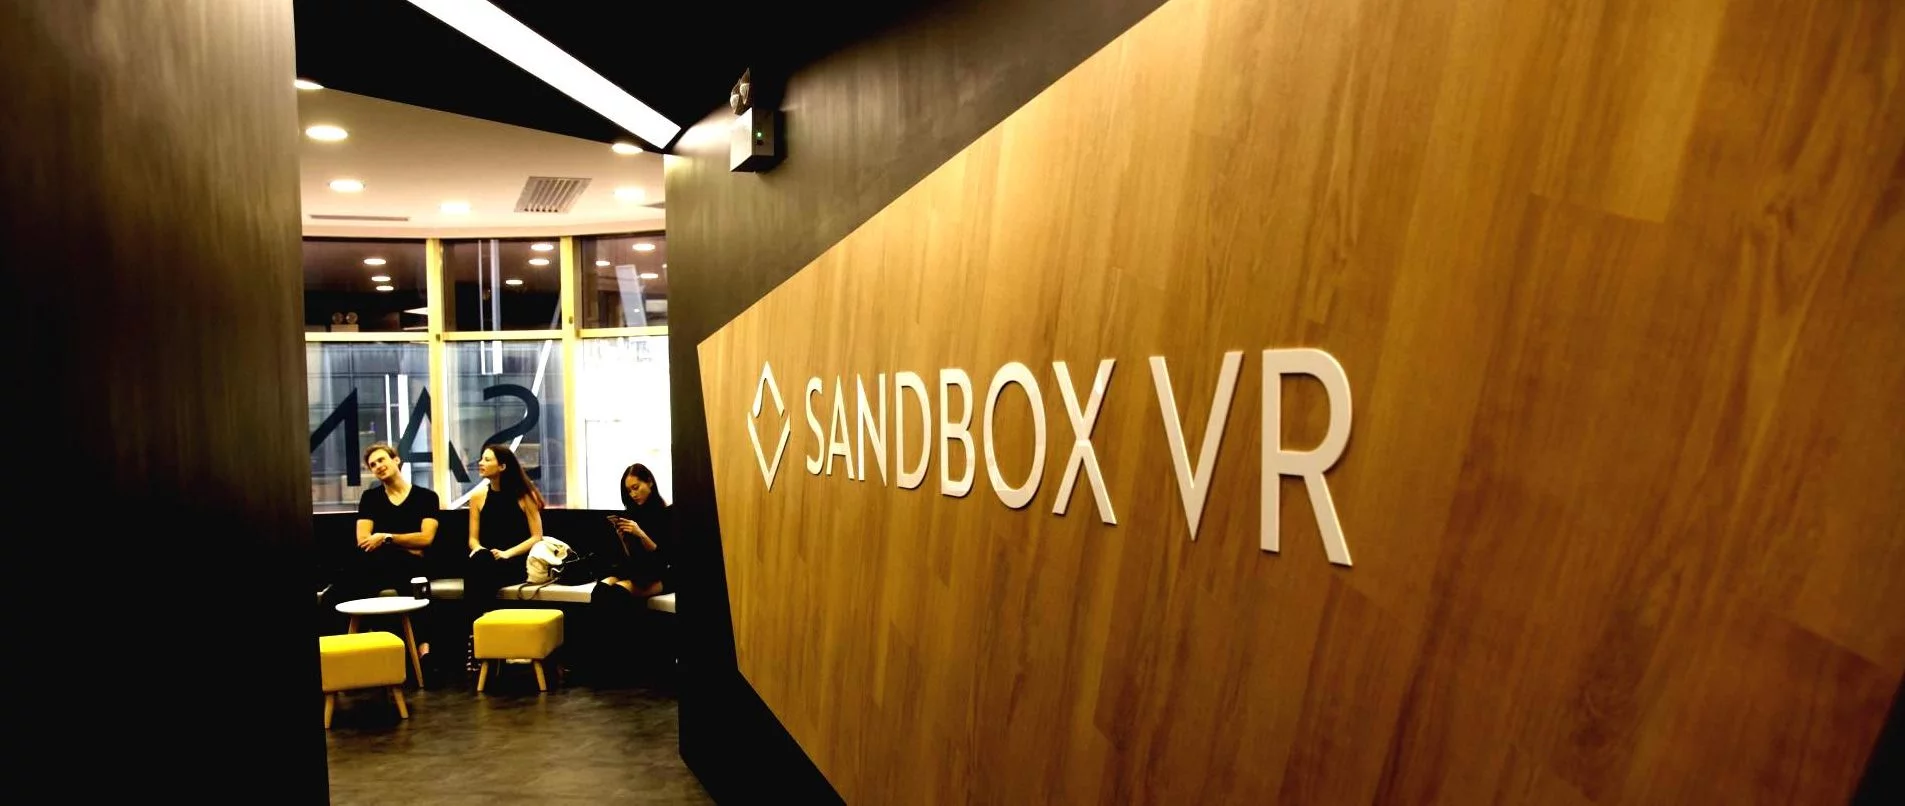 sandbox-vr-franchise-wallpaper.jpg